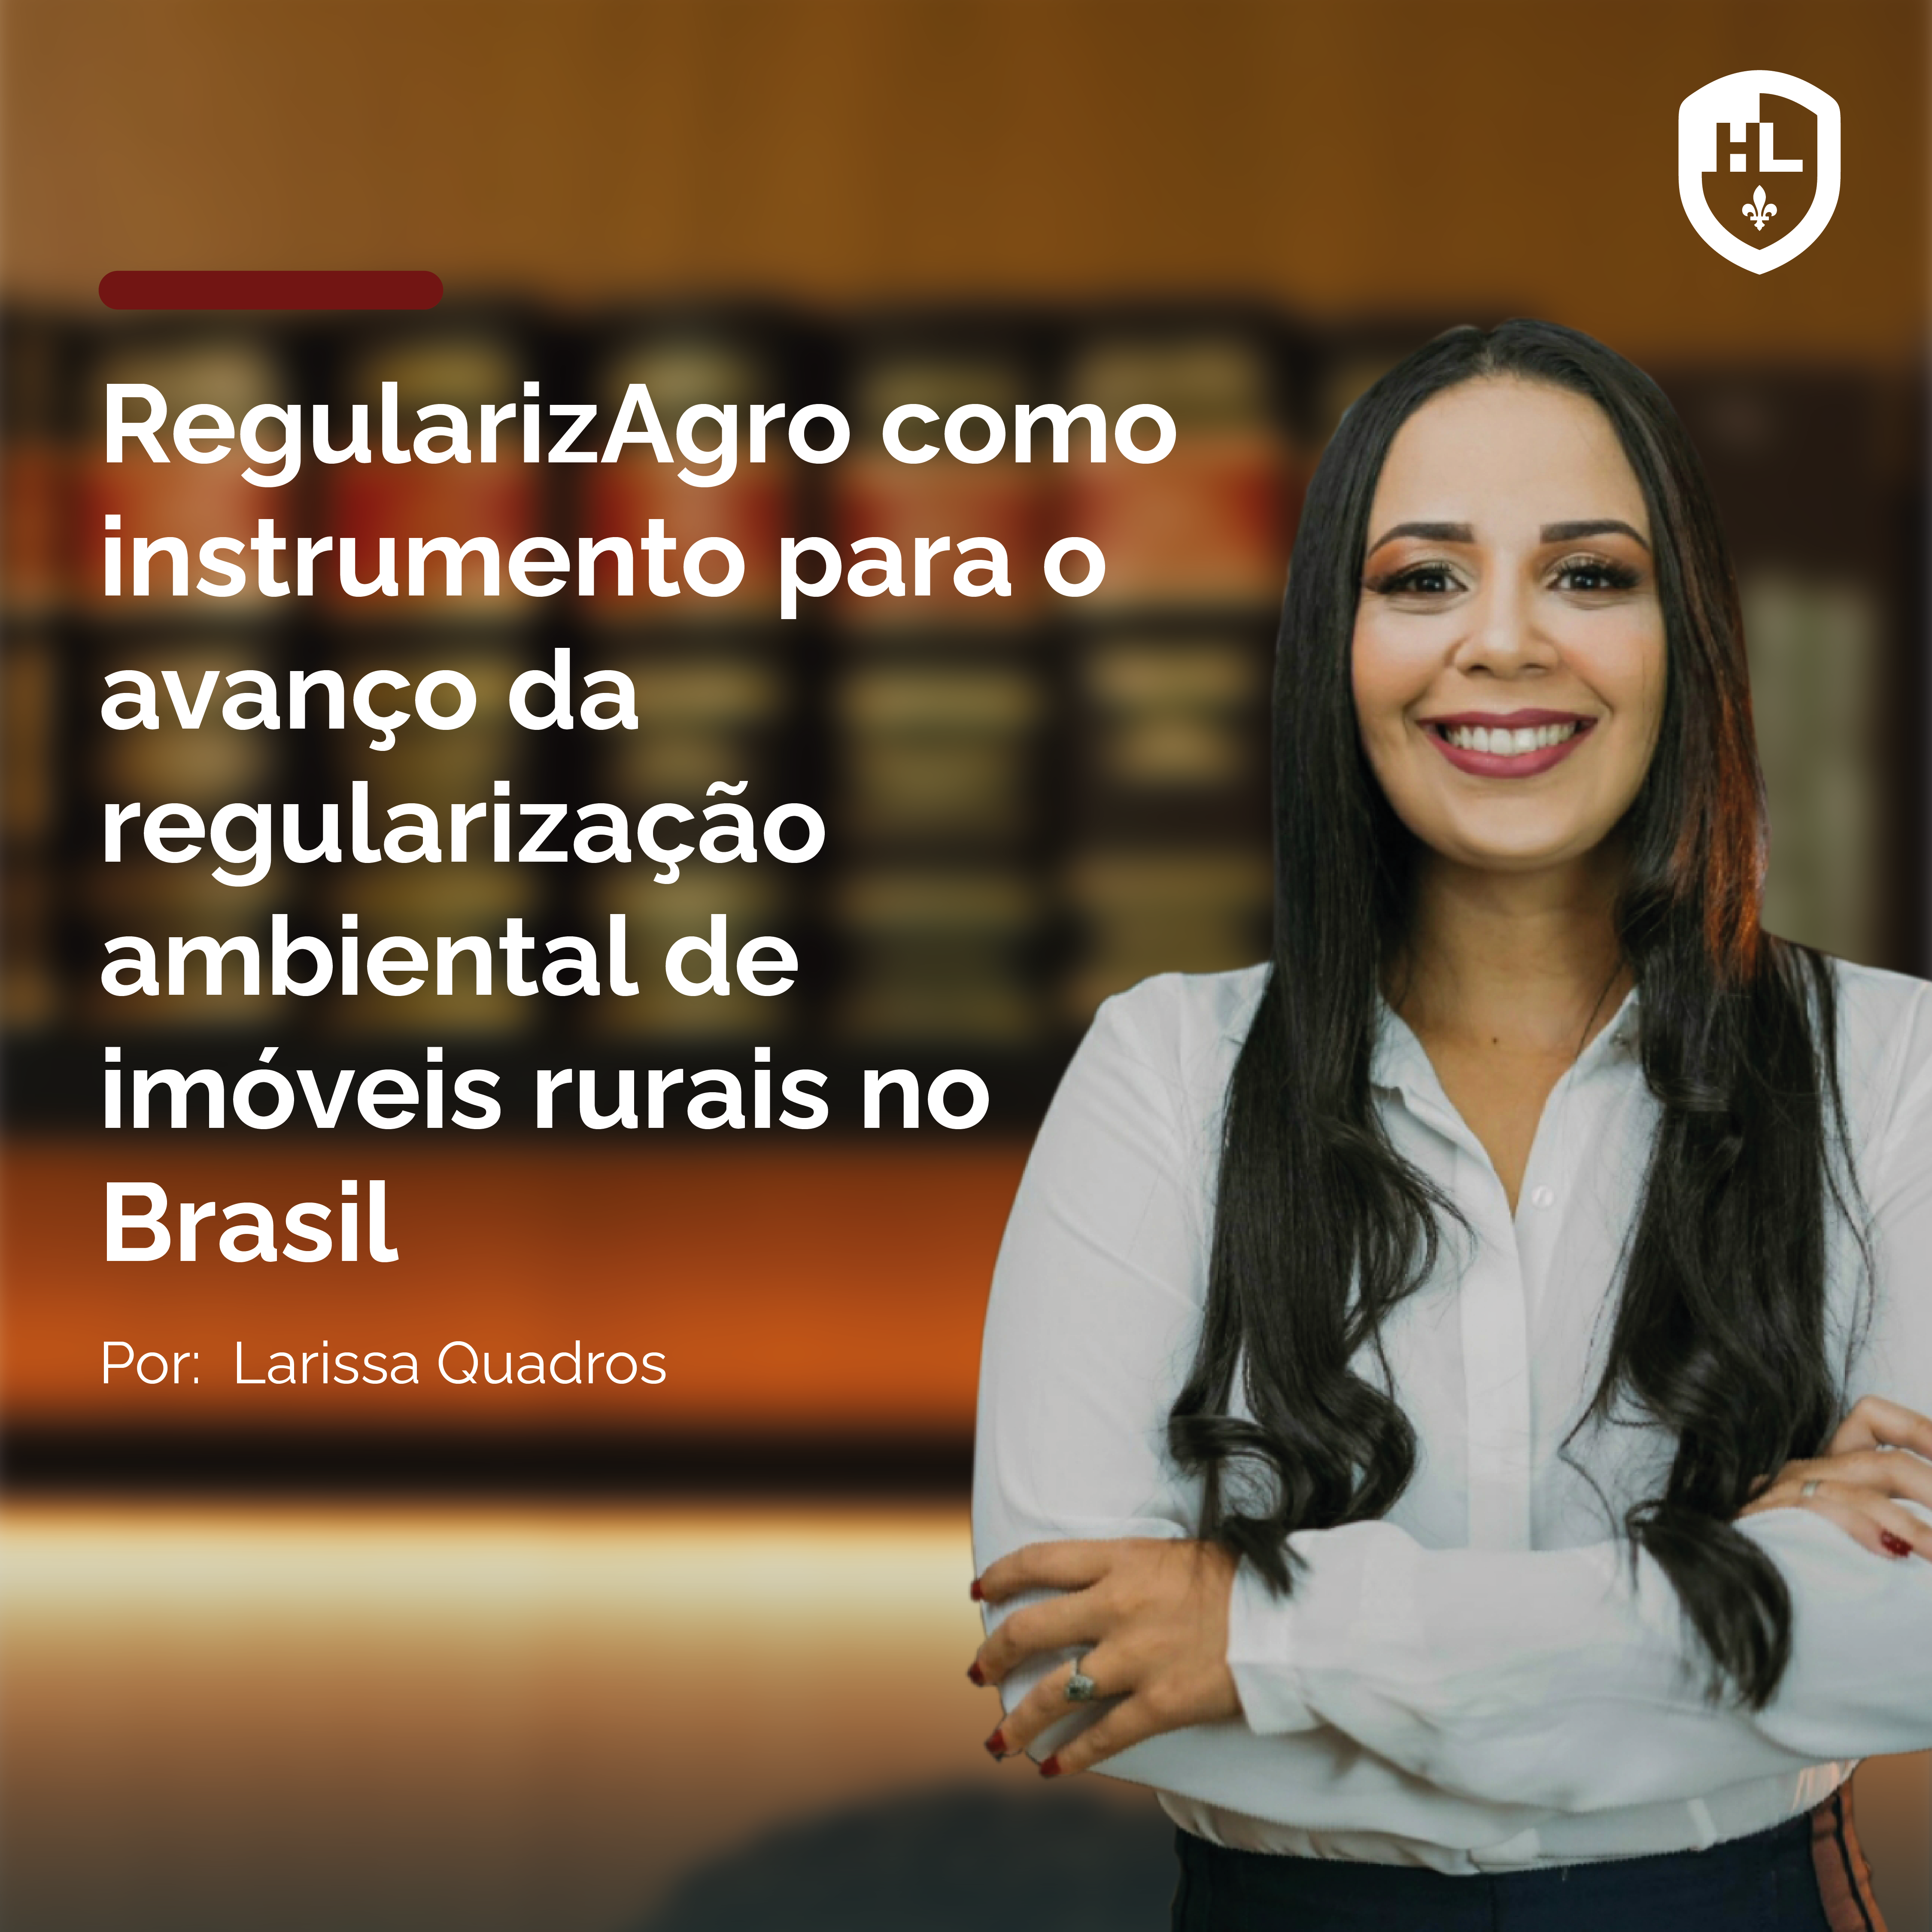 RegularizAgro como instrumento para o avanço da regularização ambiental de imóveis rurais no Brasil